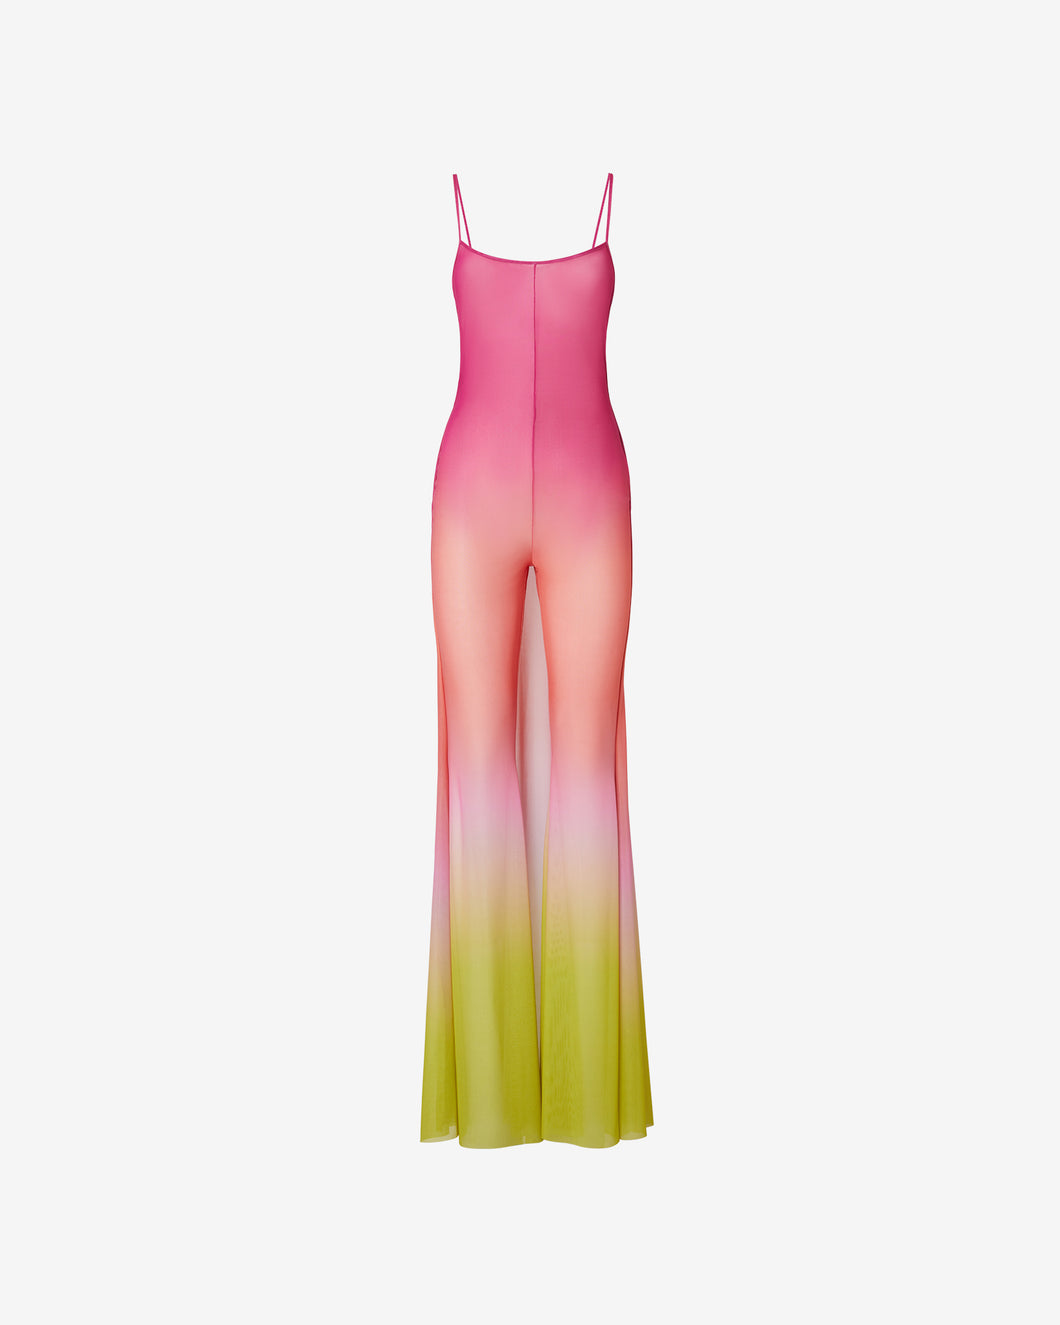 Degradé Gown : Women Dress Fuchsia | GCDS Spring/Summer 2023